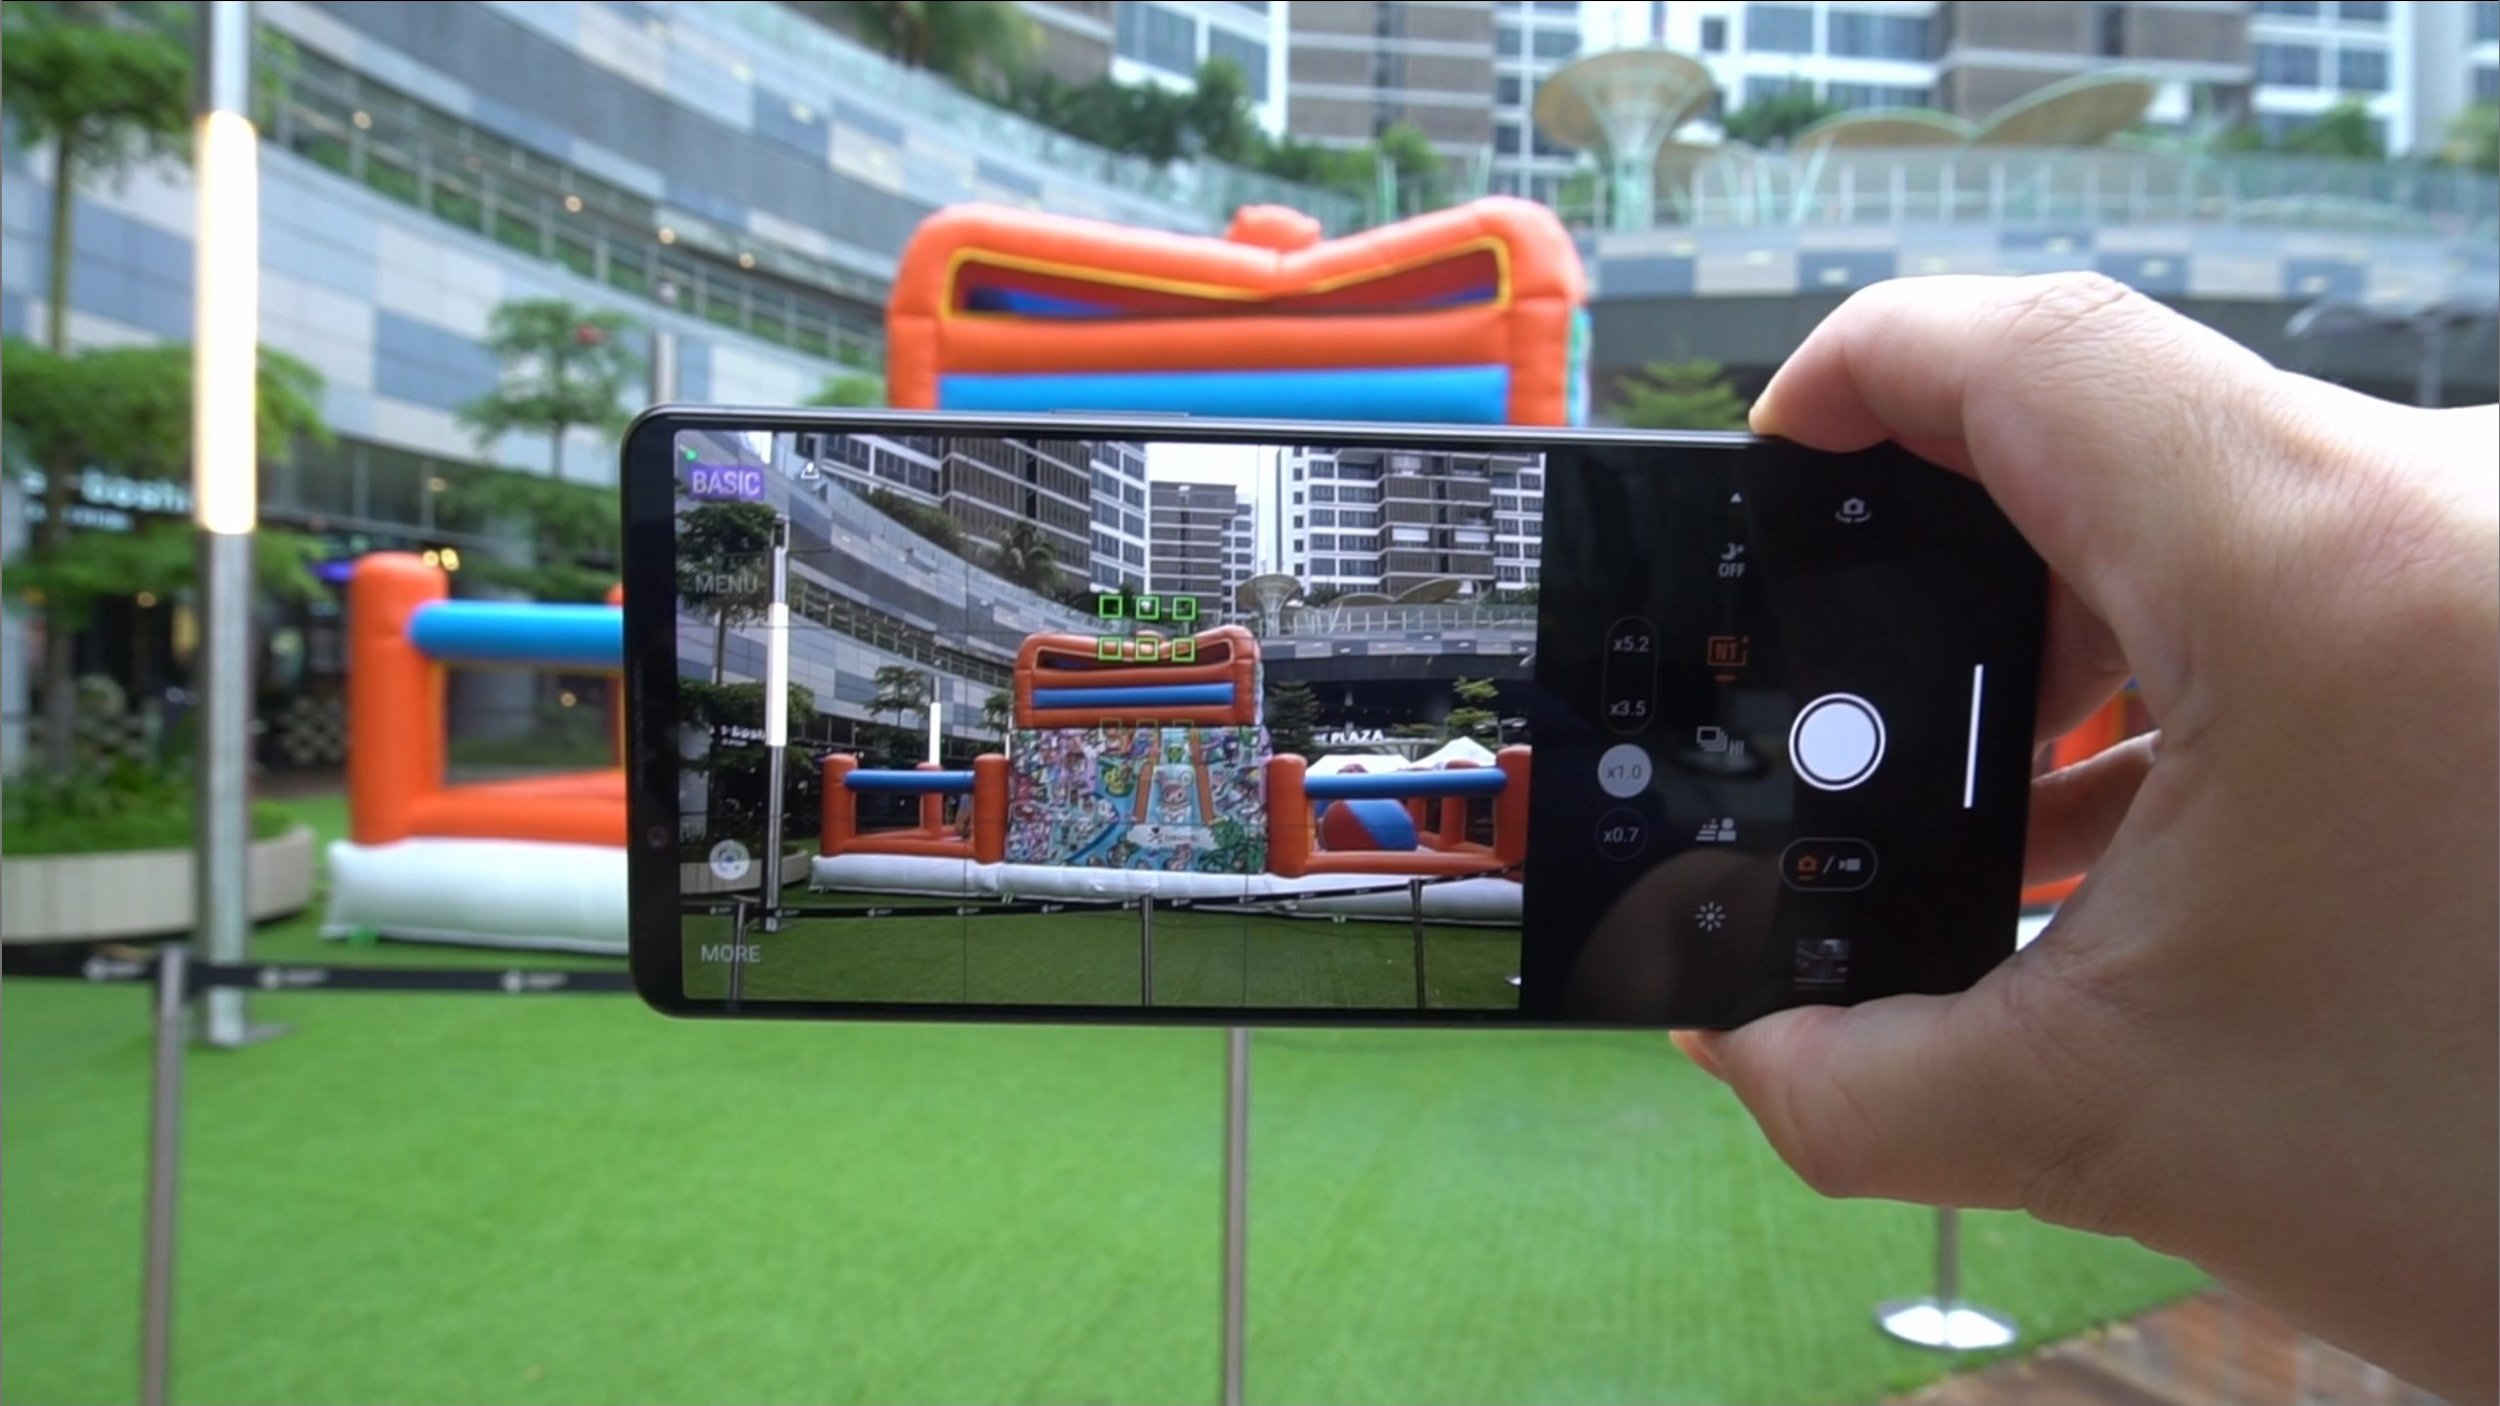 Sony Xperia 1 V review: Grippier body, same polarising aspect ratio -  Techgoondu